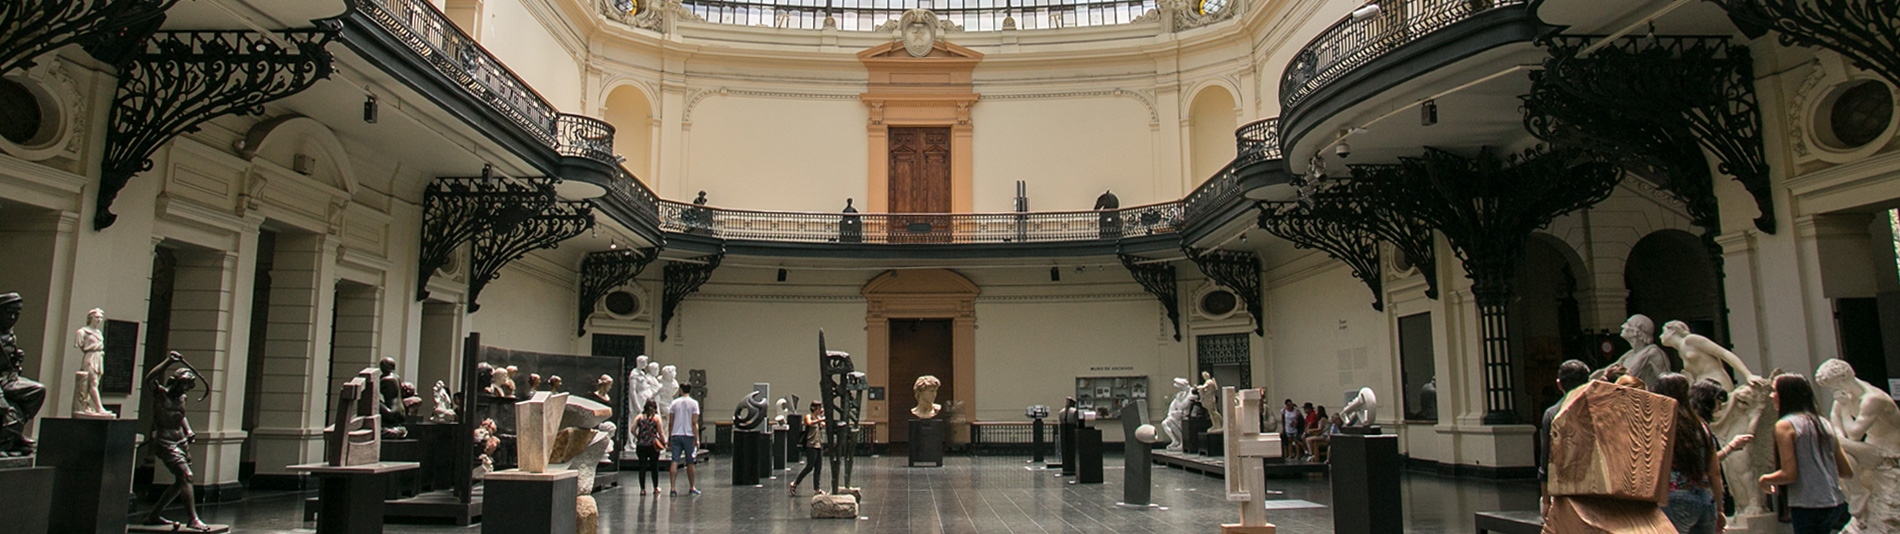 Museu Nacional de Bellas Artes de Santiago